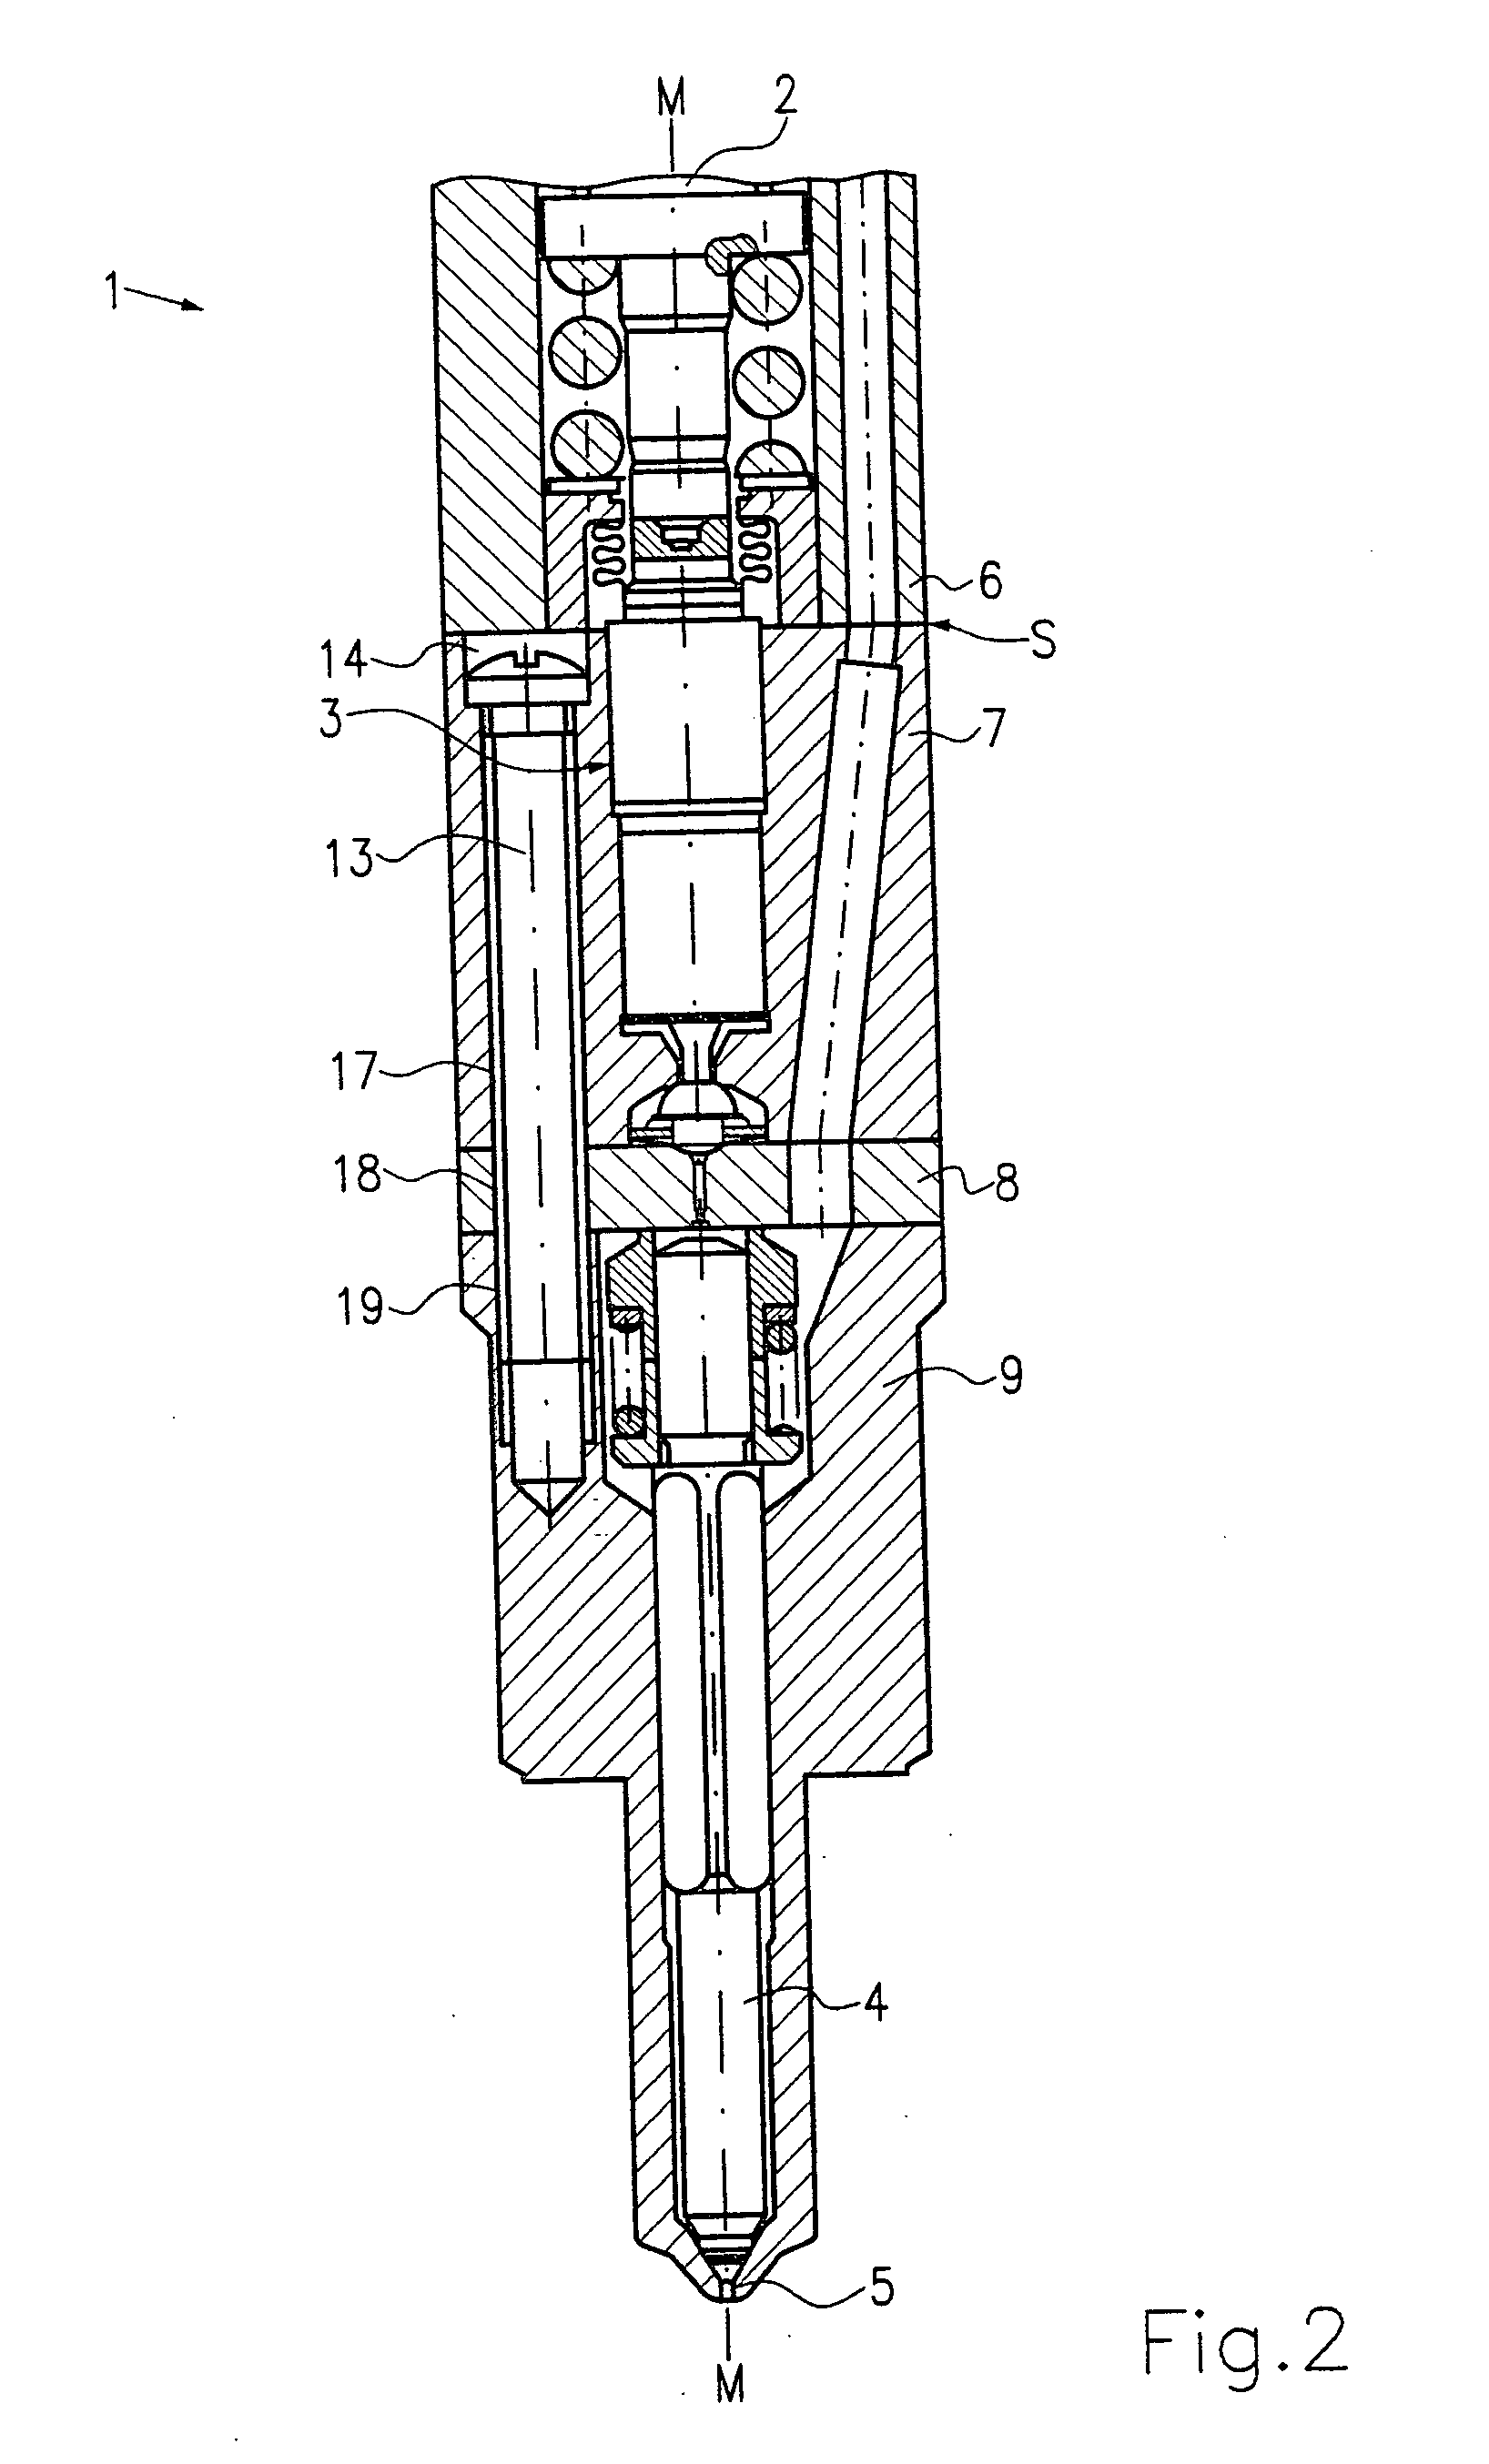 Fluid control valve